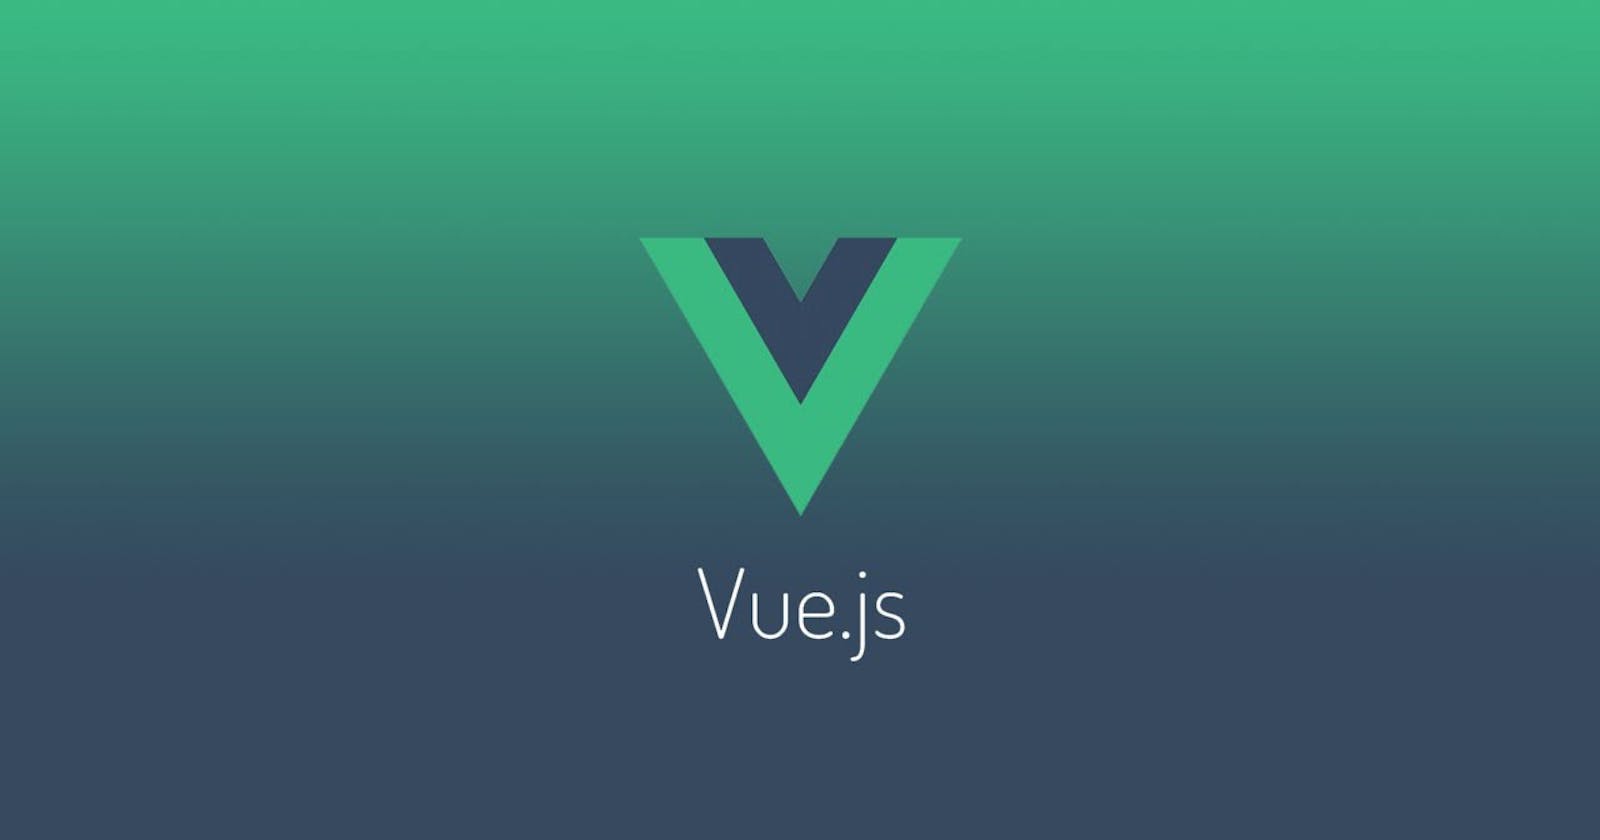 Setting Up a VueJS Application